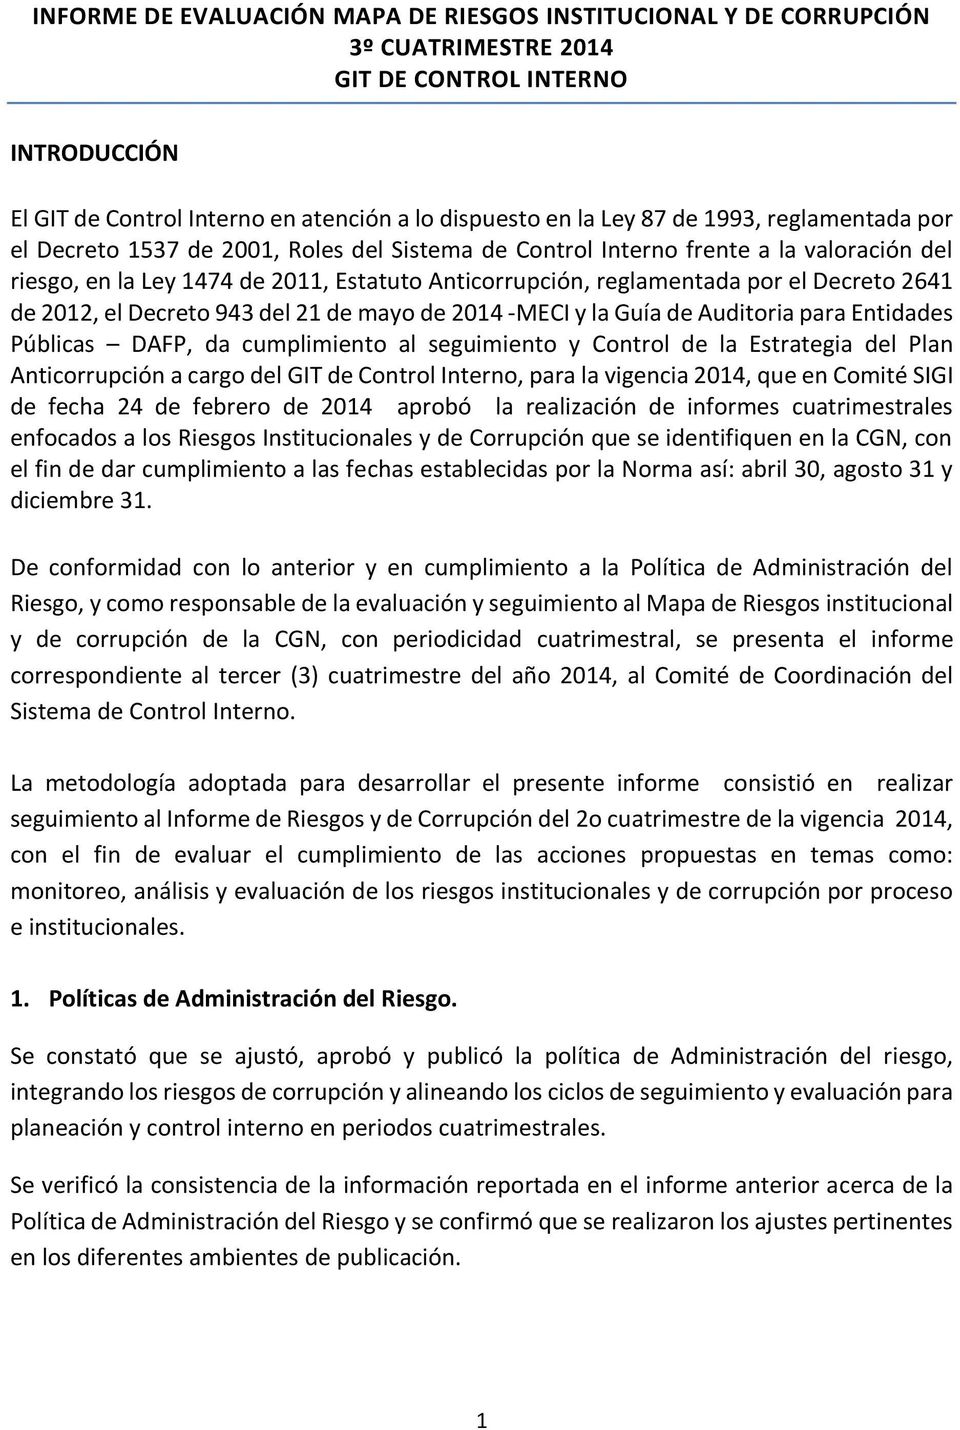 2012, el Decreto 943 del 21 de mayo de 2014 -MECI y la Guía de Auditoria para Entidades Públicas DAFP, da cumplimiento al seguimiento y Control de la Estrategia del Plan Anticorrupción a cargo del